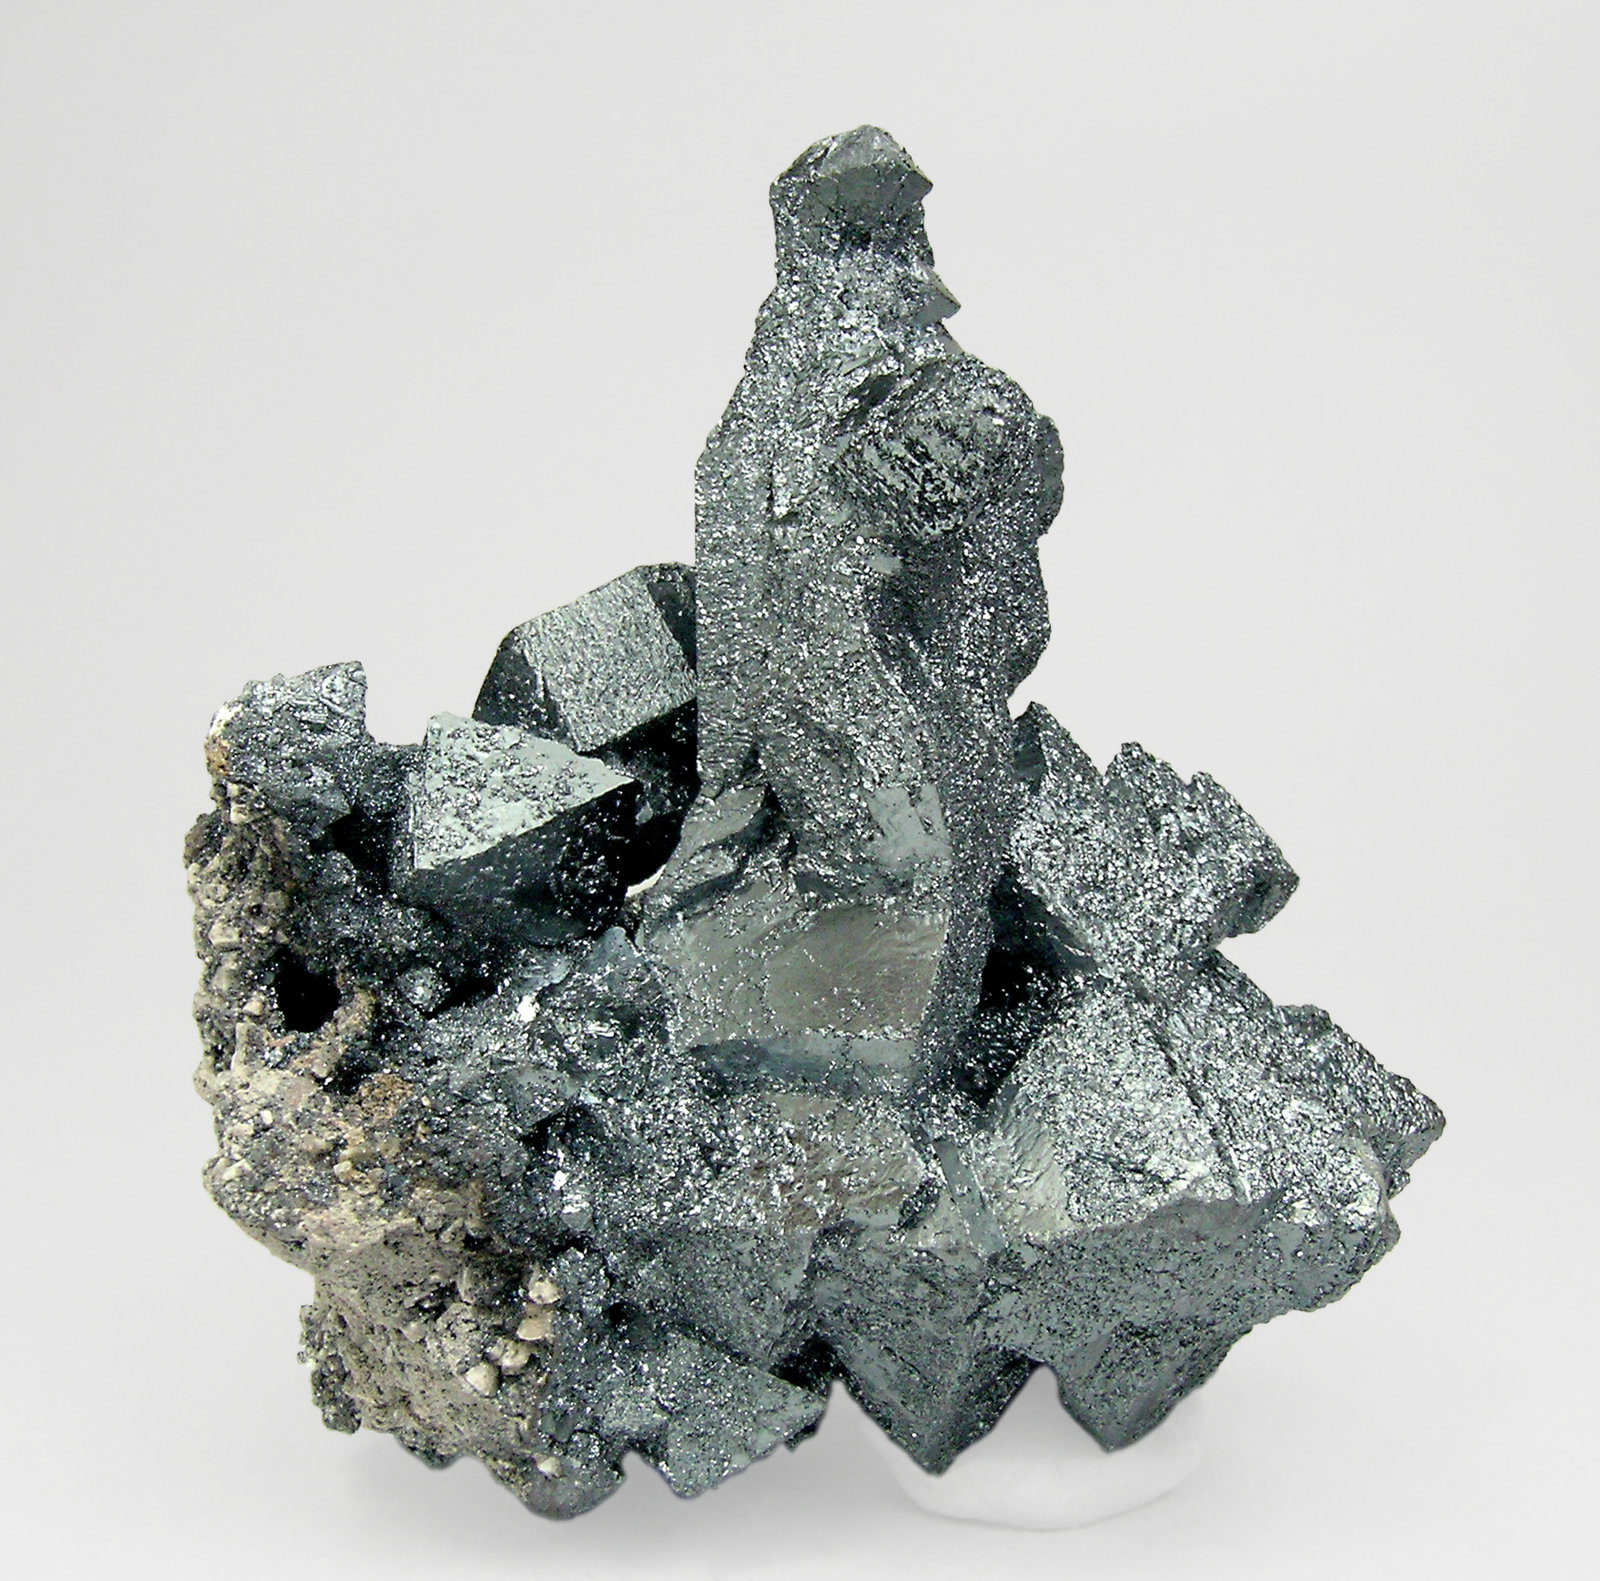 specimens/s_imagesQ1/Hematite-EK56Q1r.jpg